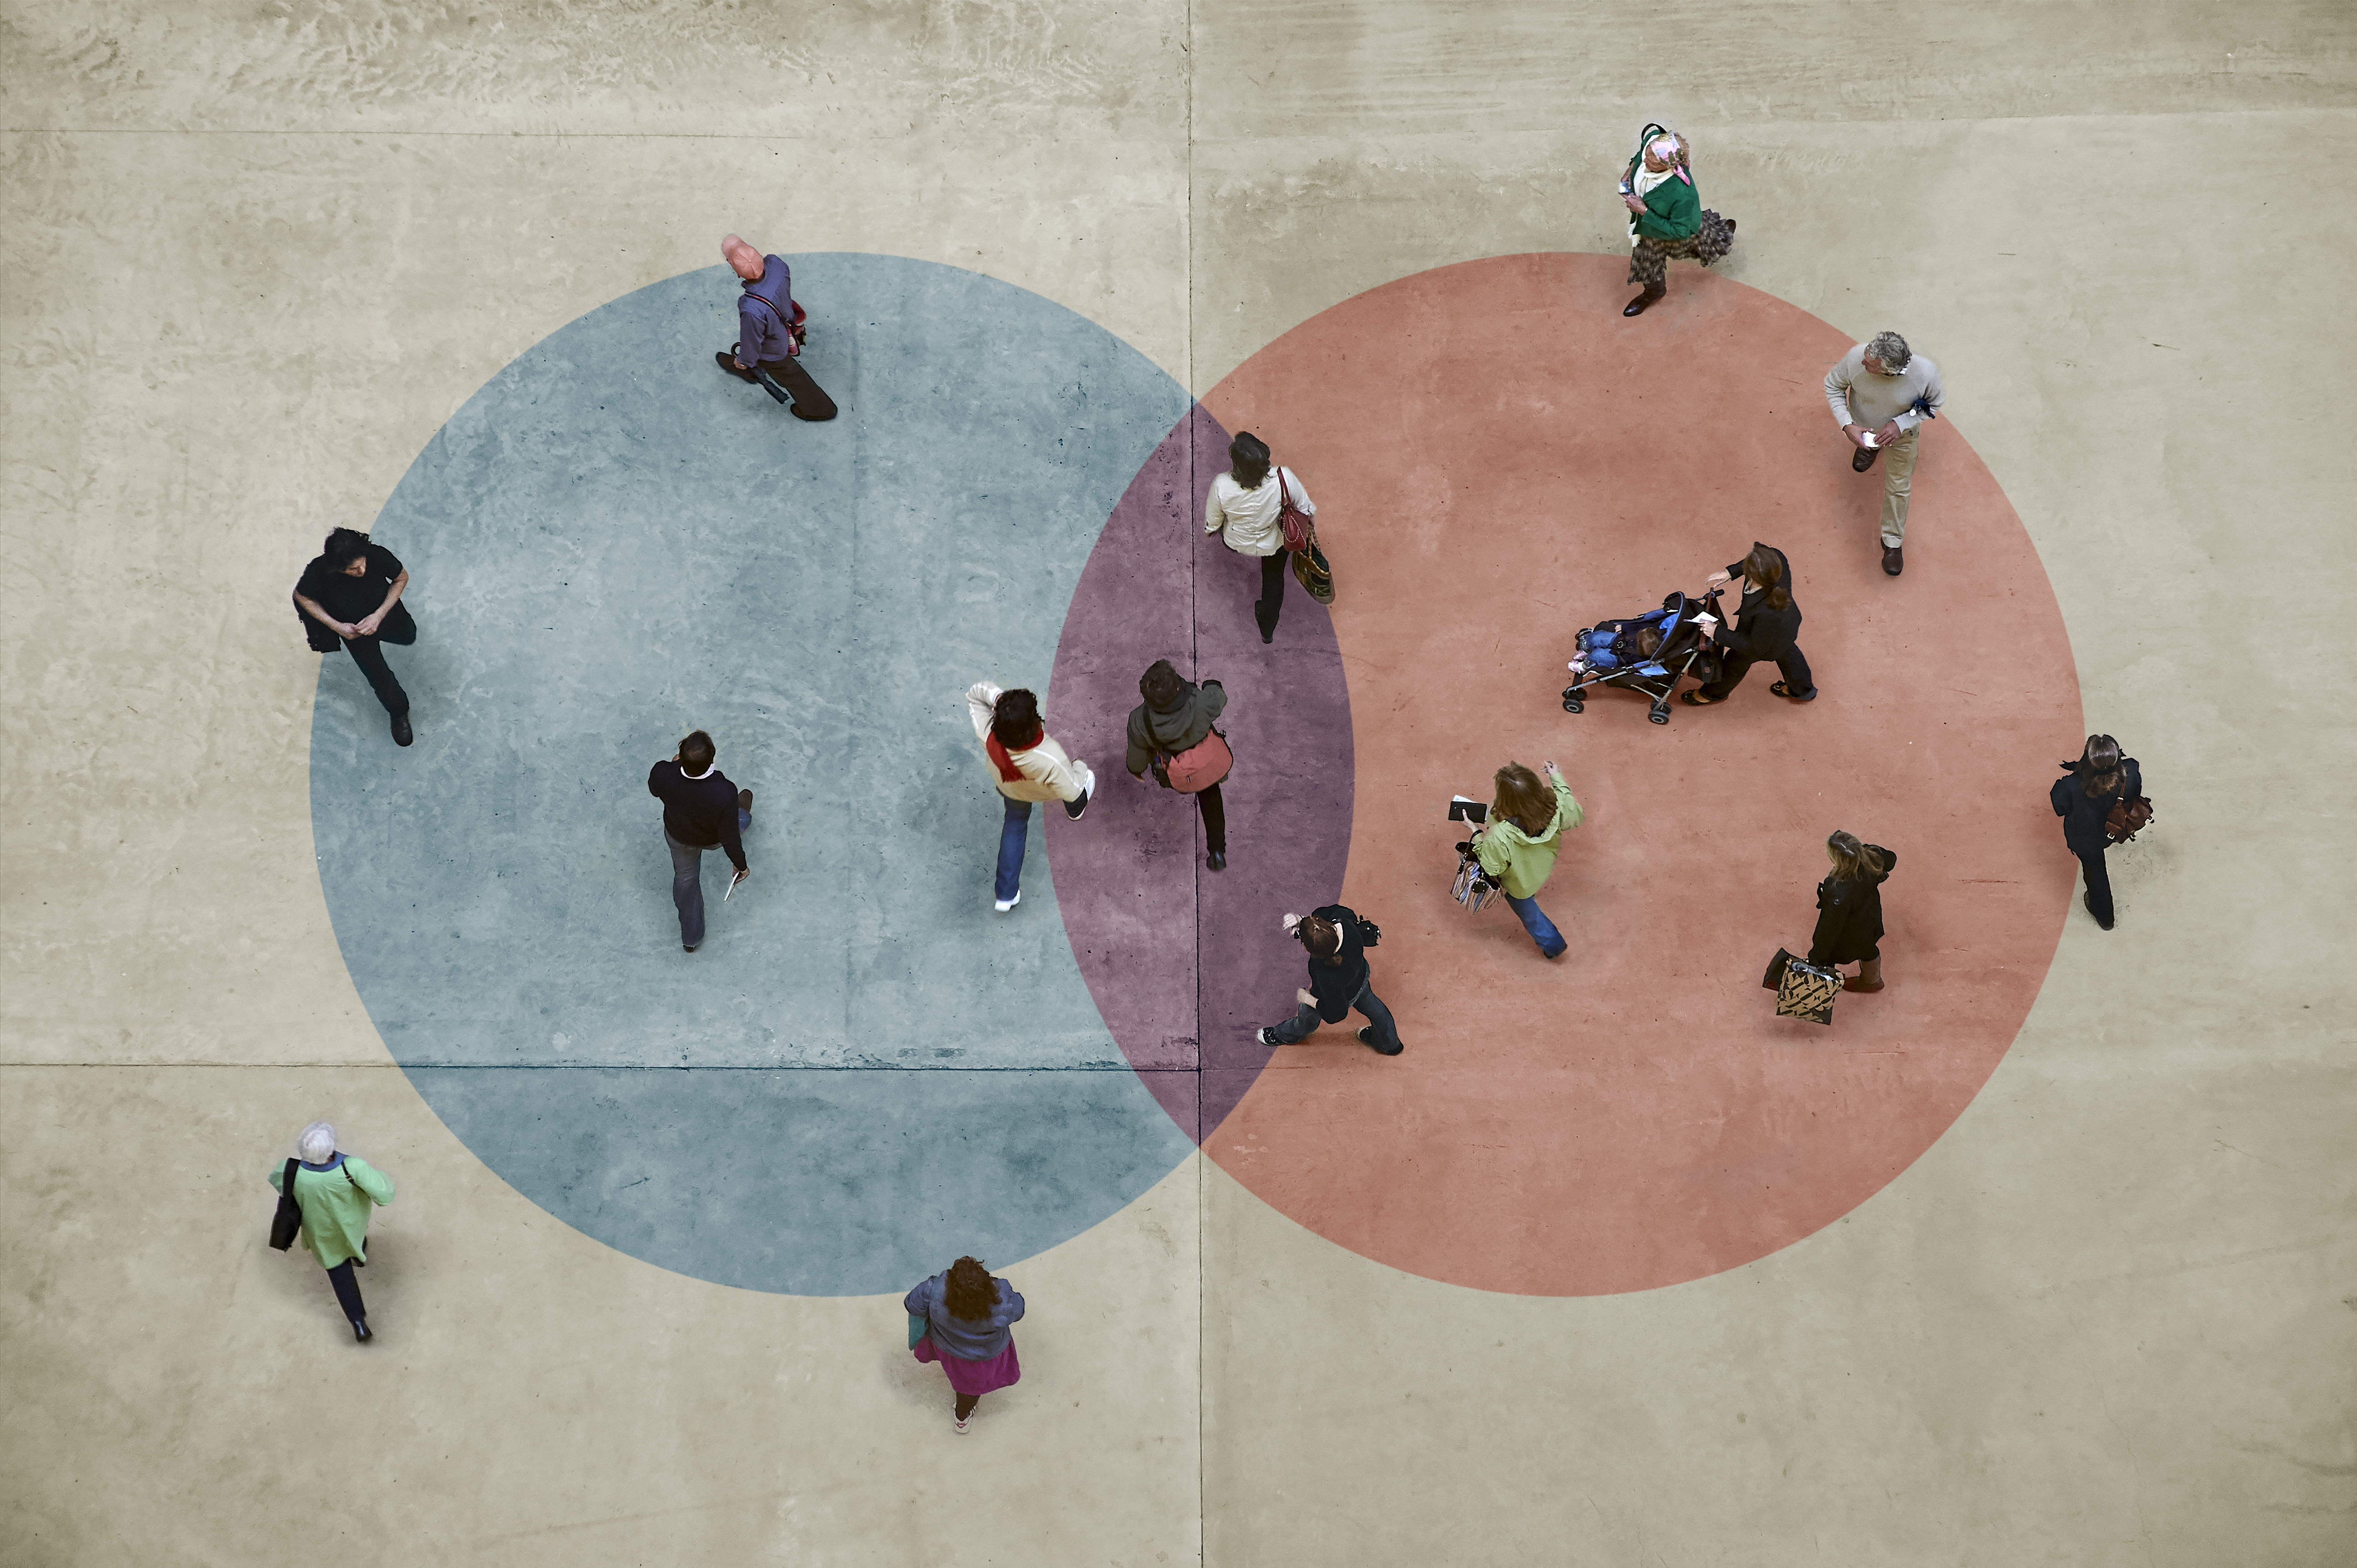 Image de cercles bleus et rouges superposés avec des personnes debout dans et autour des deux.